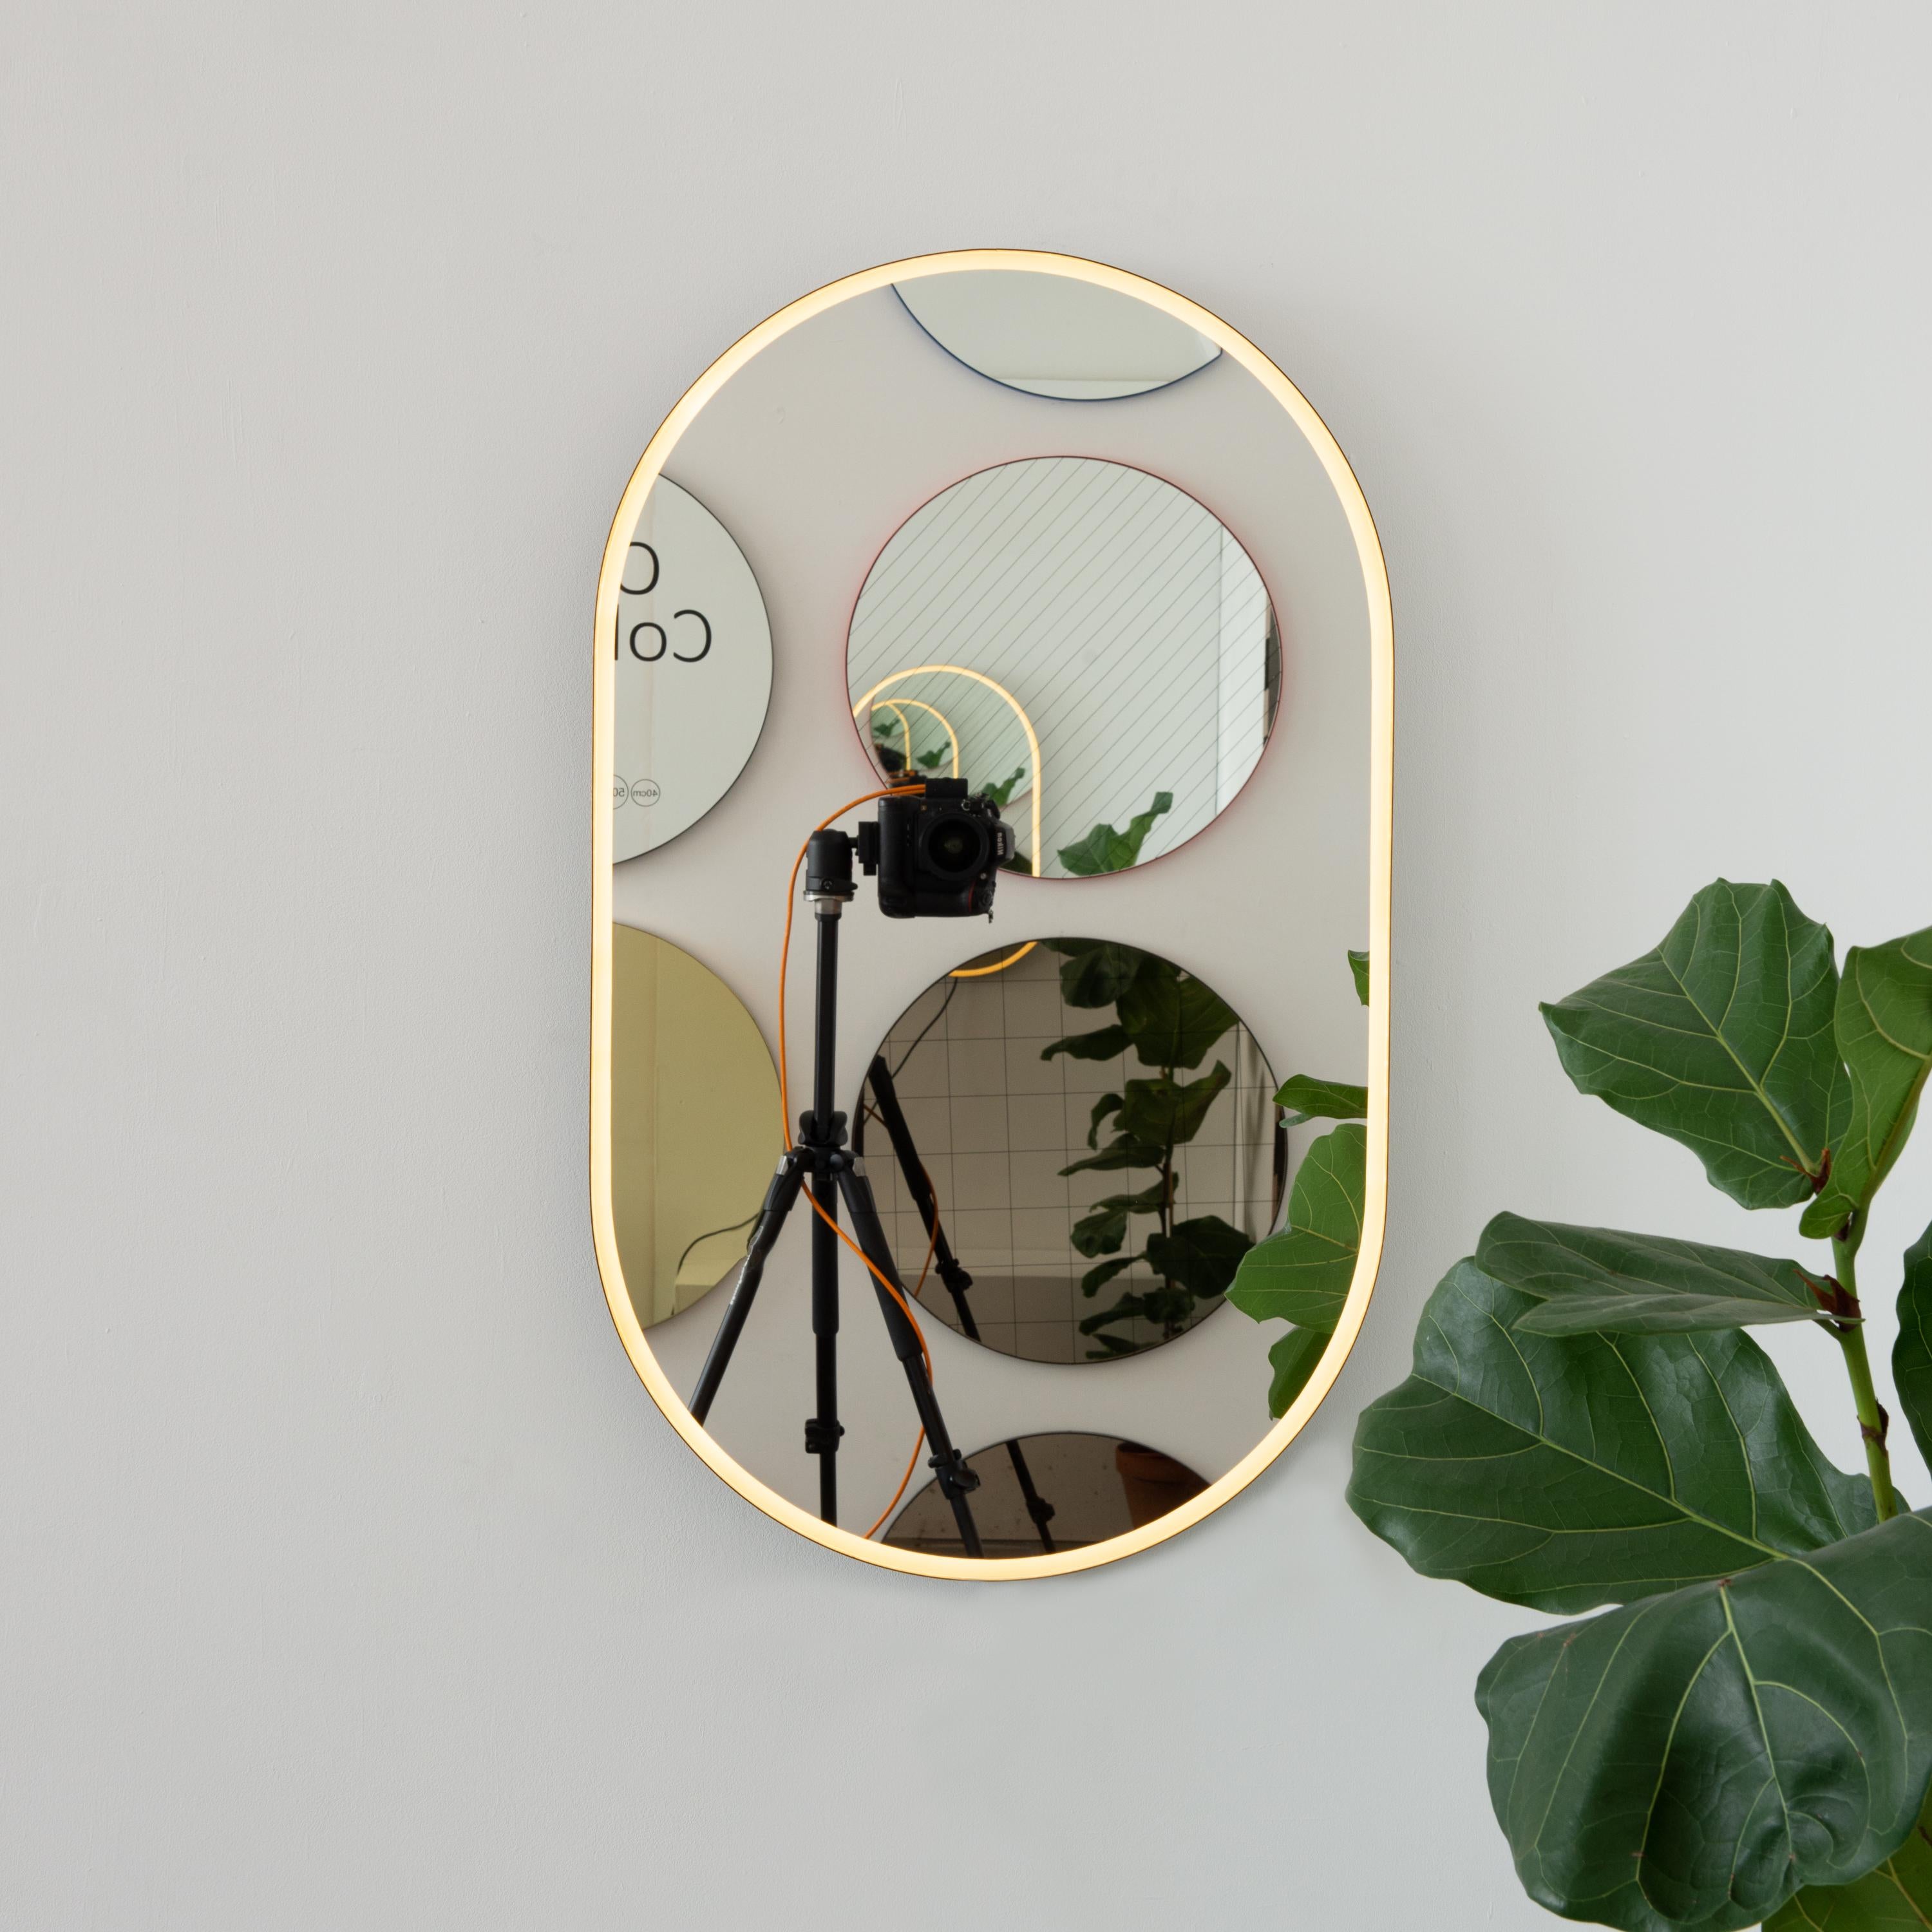 Moderner, handgefertigter, von vorne beleuchteter, kapselförmiger Spiegel mit einem eleganten, bronzefarben patinierten Messingrahmen. Entworfen und handgefertigt in London, UK.

Je nach Größe des Spiegels mit einem Messinghaken oder einer